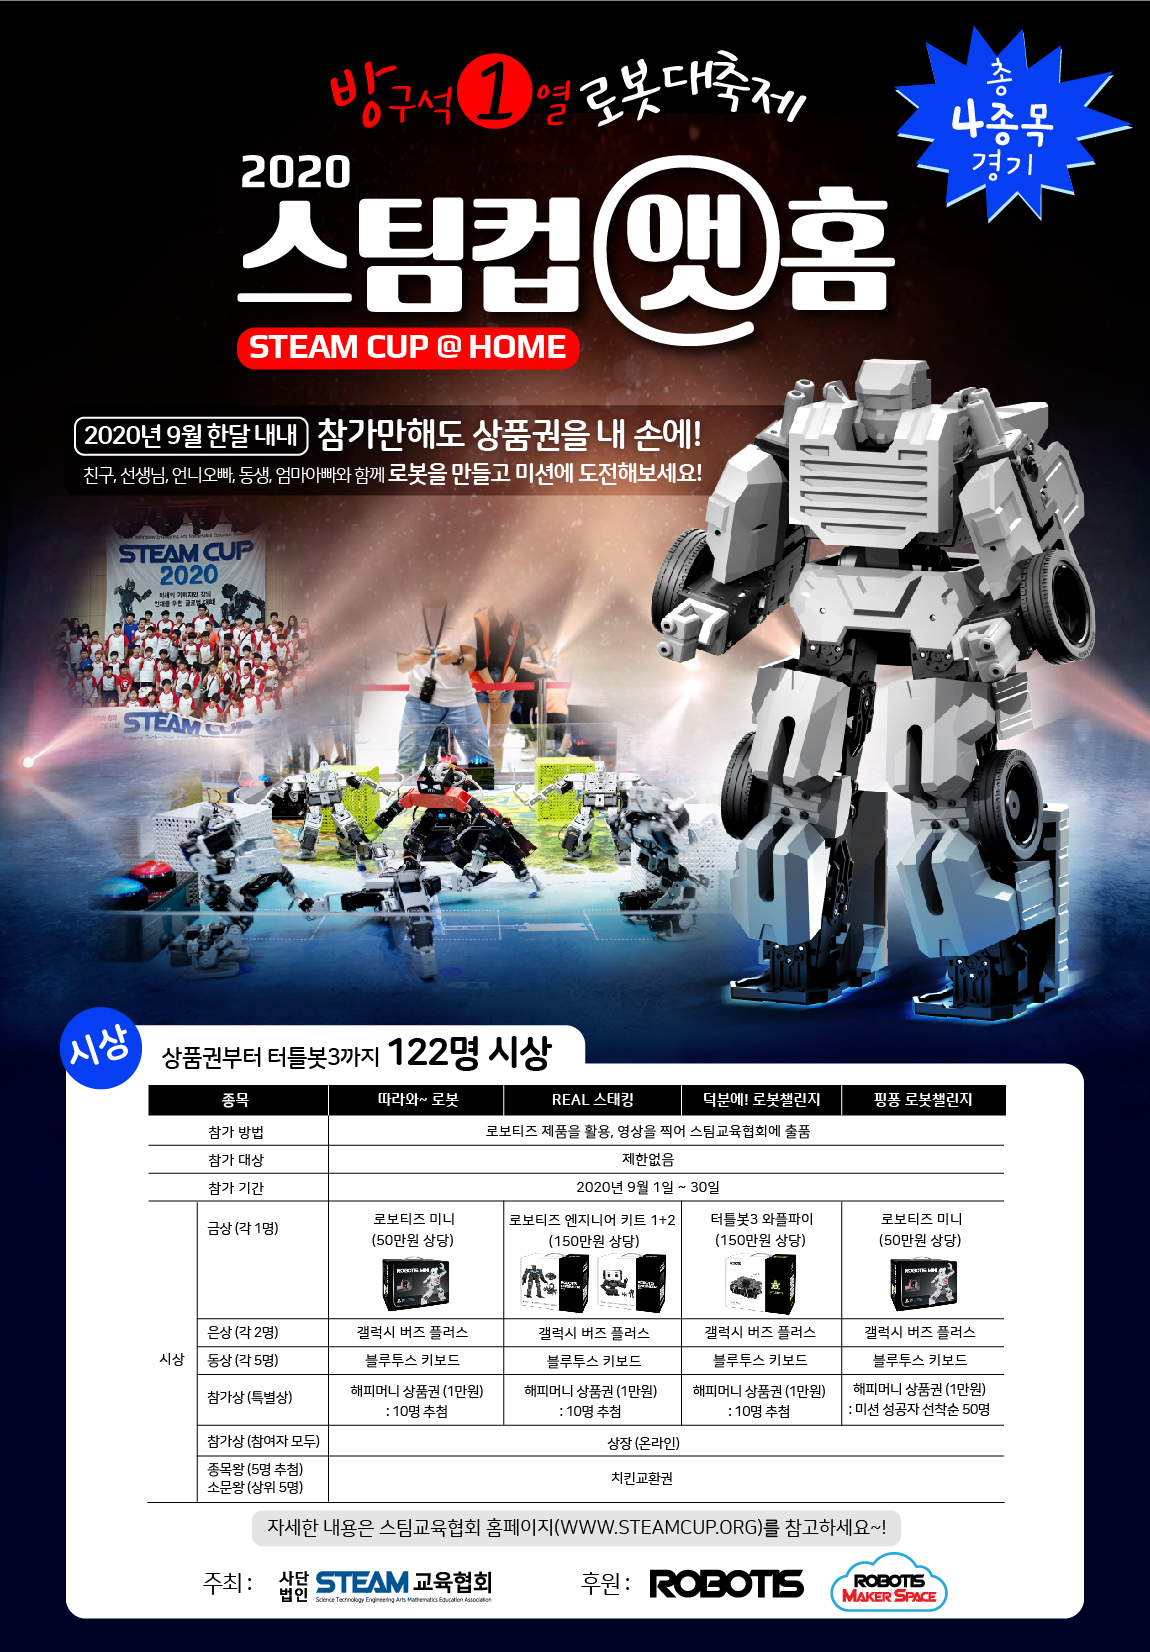 본격 방구석 1열 로봇 대축제, 2020 스팀컵 앳홈